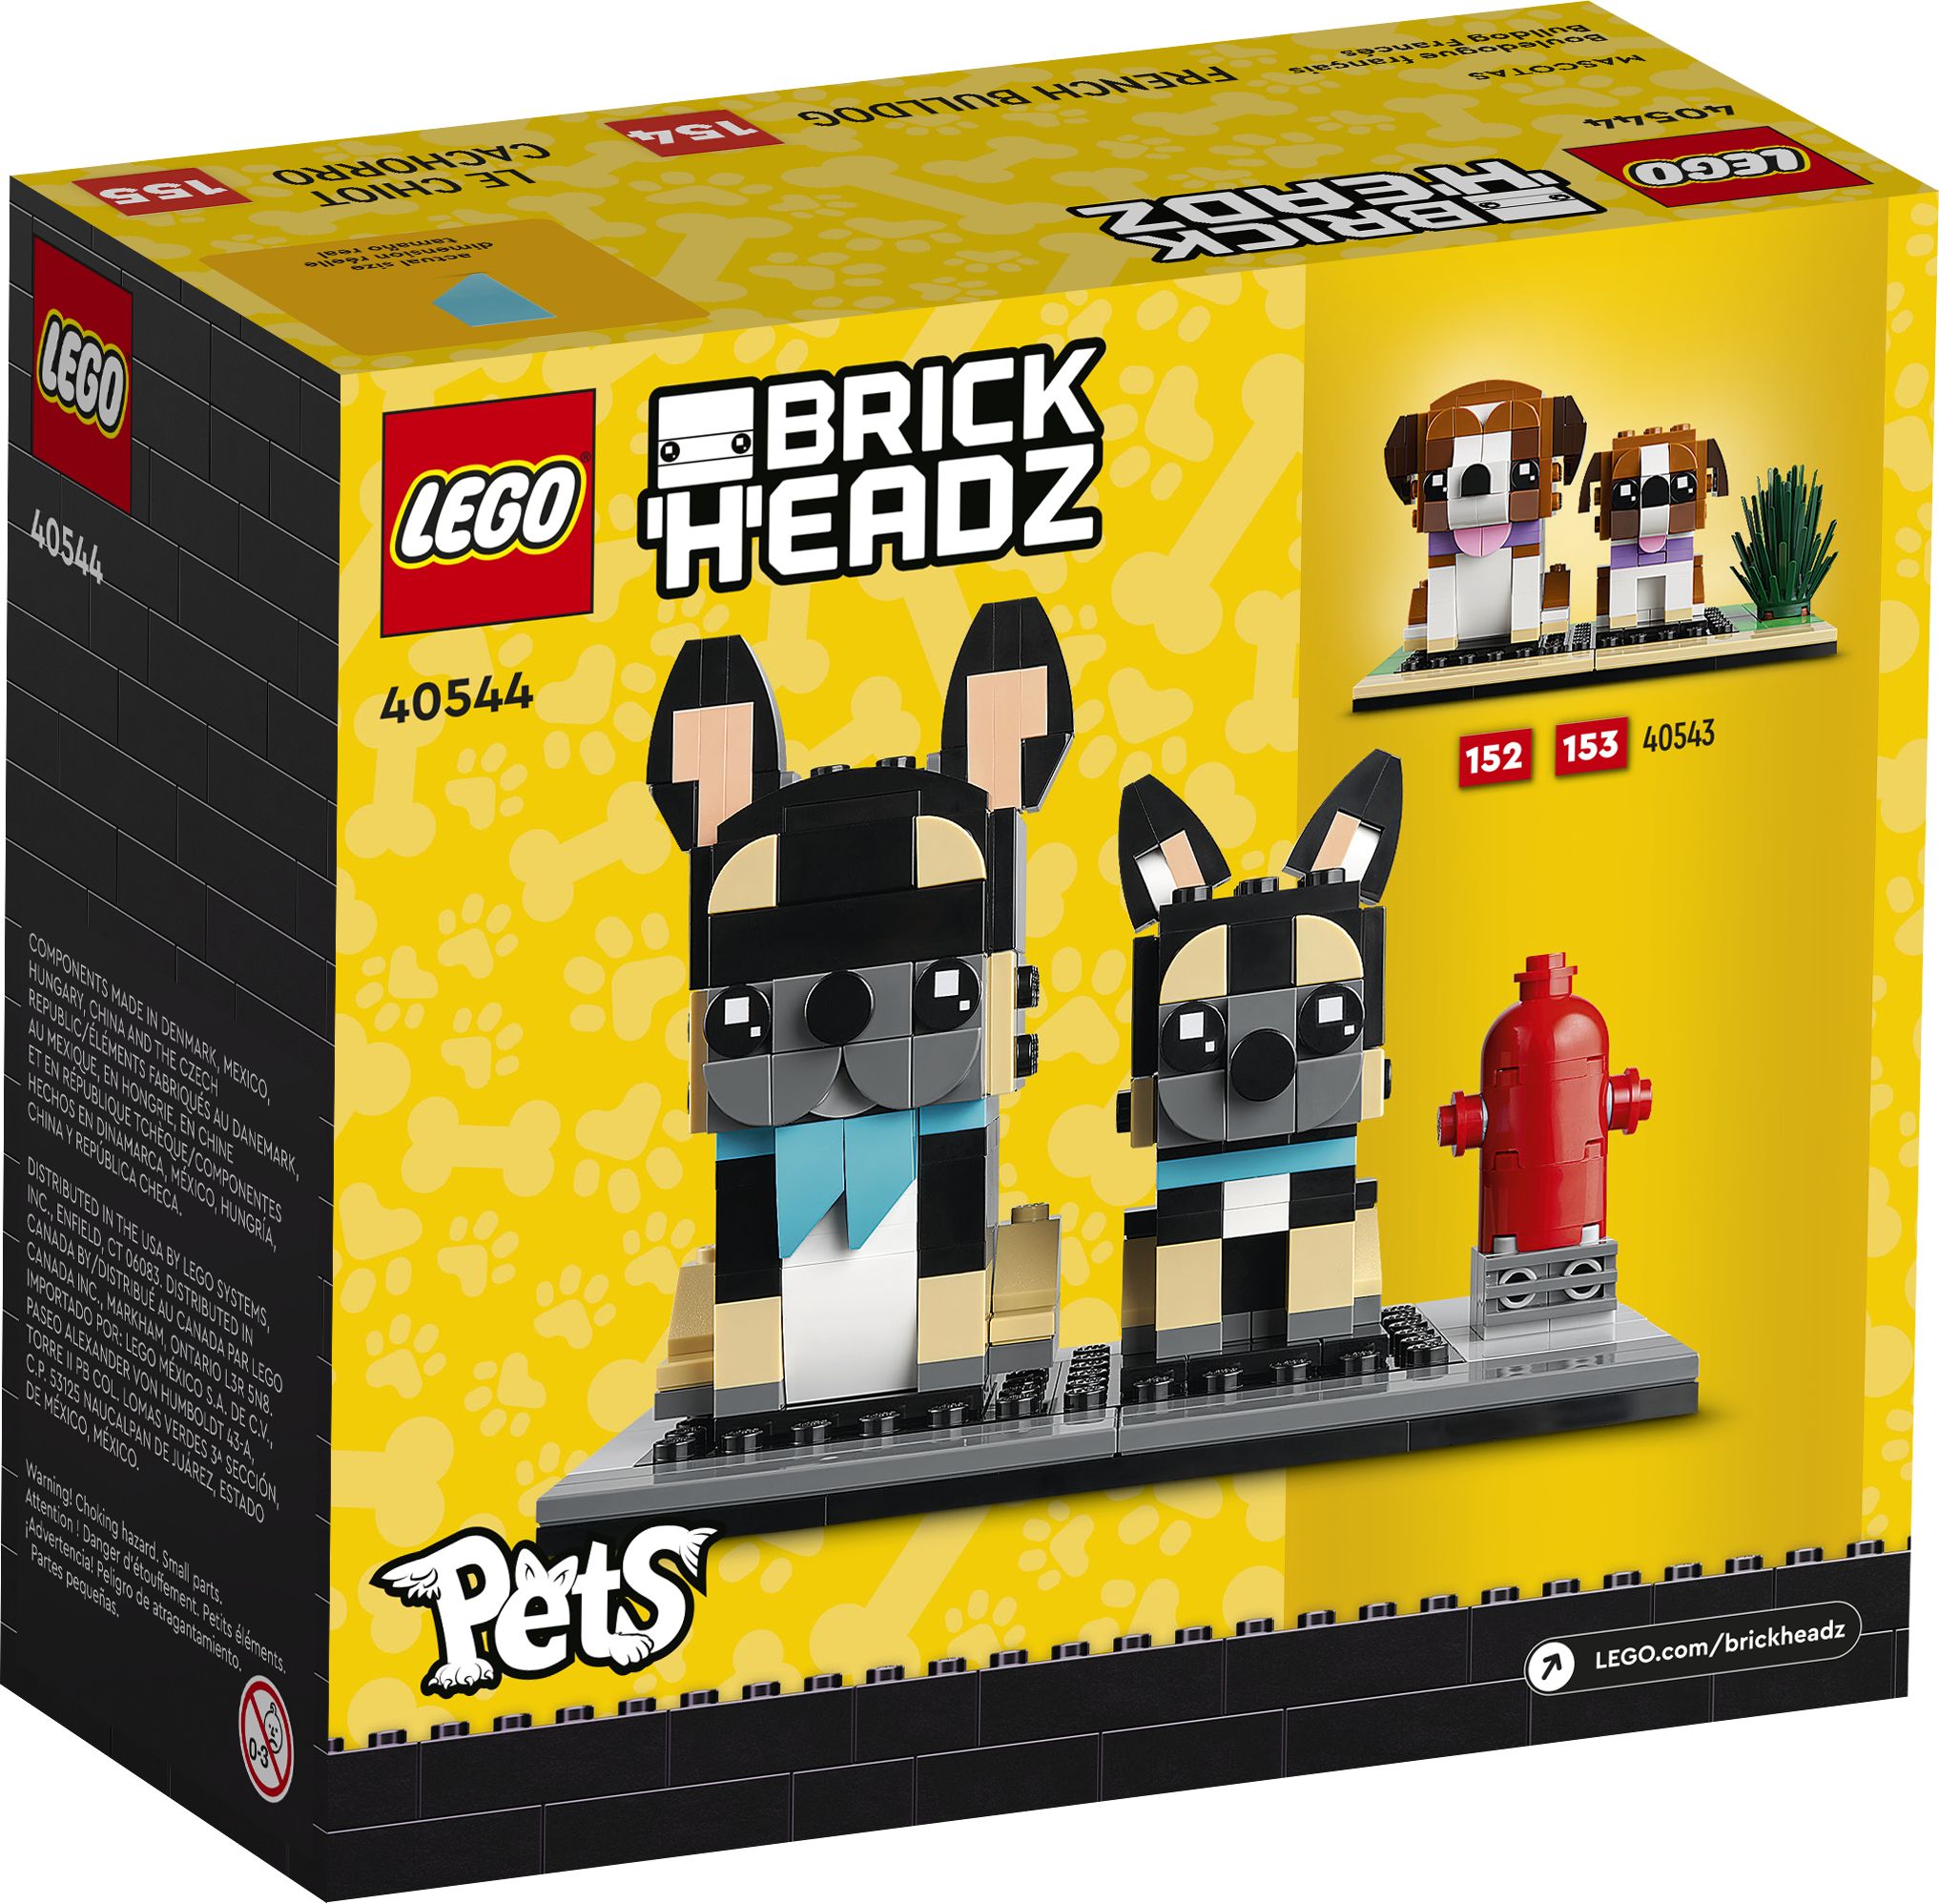 LEGO BrickHeadz 40544 Pets - French Bulldog LEGO_40544_Box5_v39.jpg